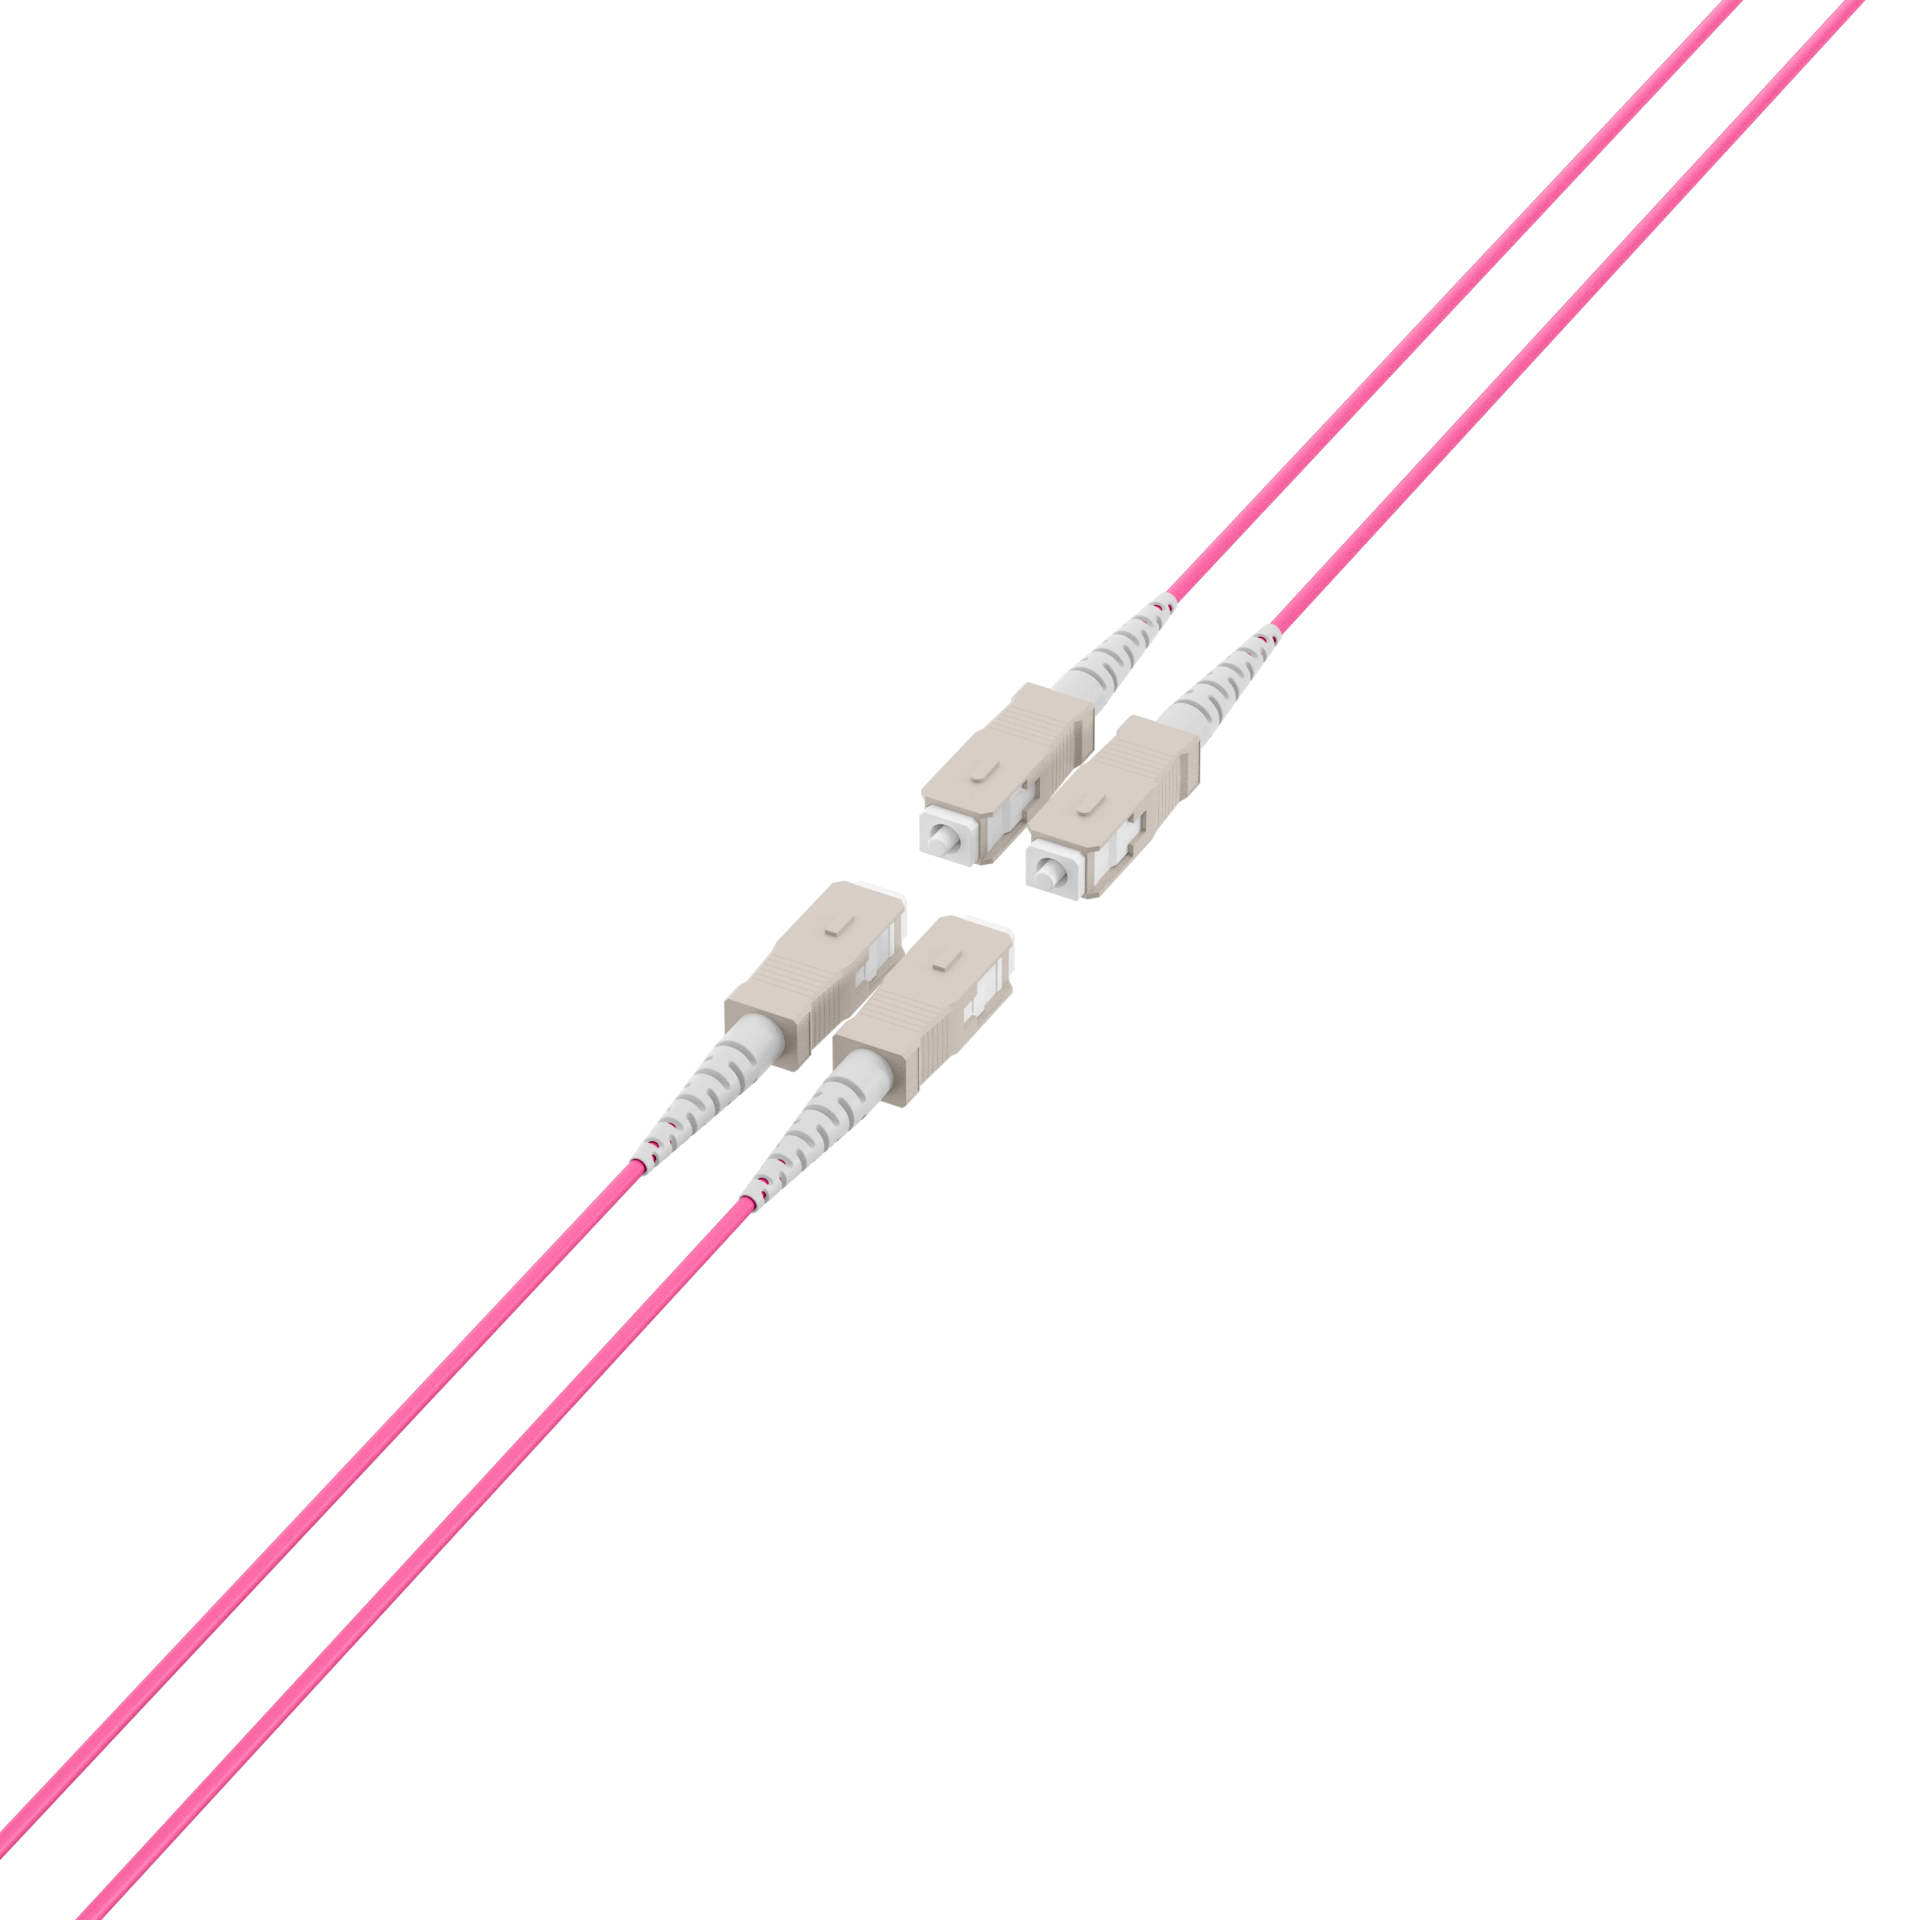 Trunk cable U-DQ(ZN)BH OM4 4G (1x4) SC-SC,70m Dca LSZH